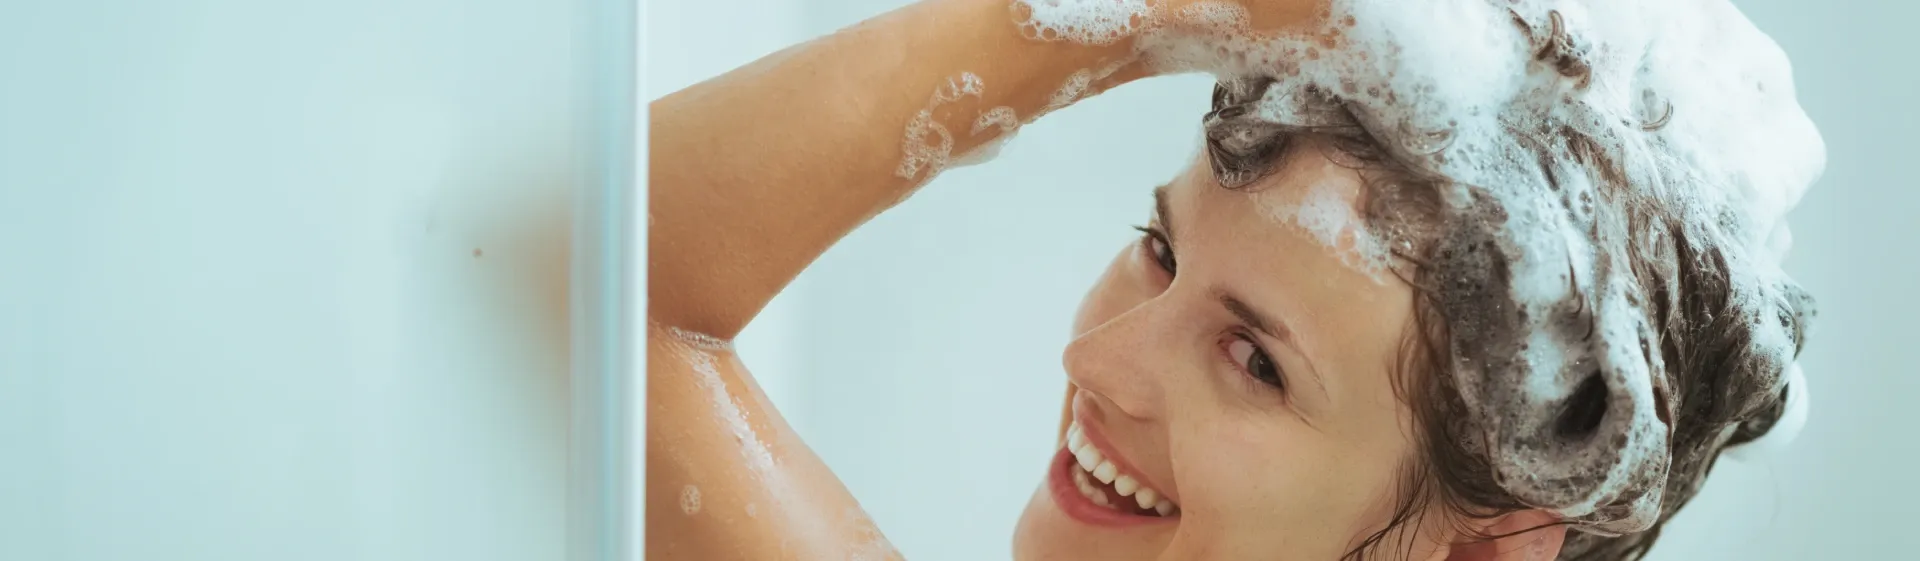 Shampoo OGX: 4 melhores opções da marca para os cabelos